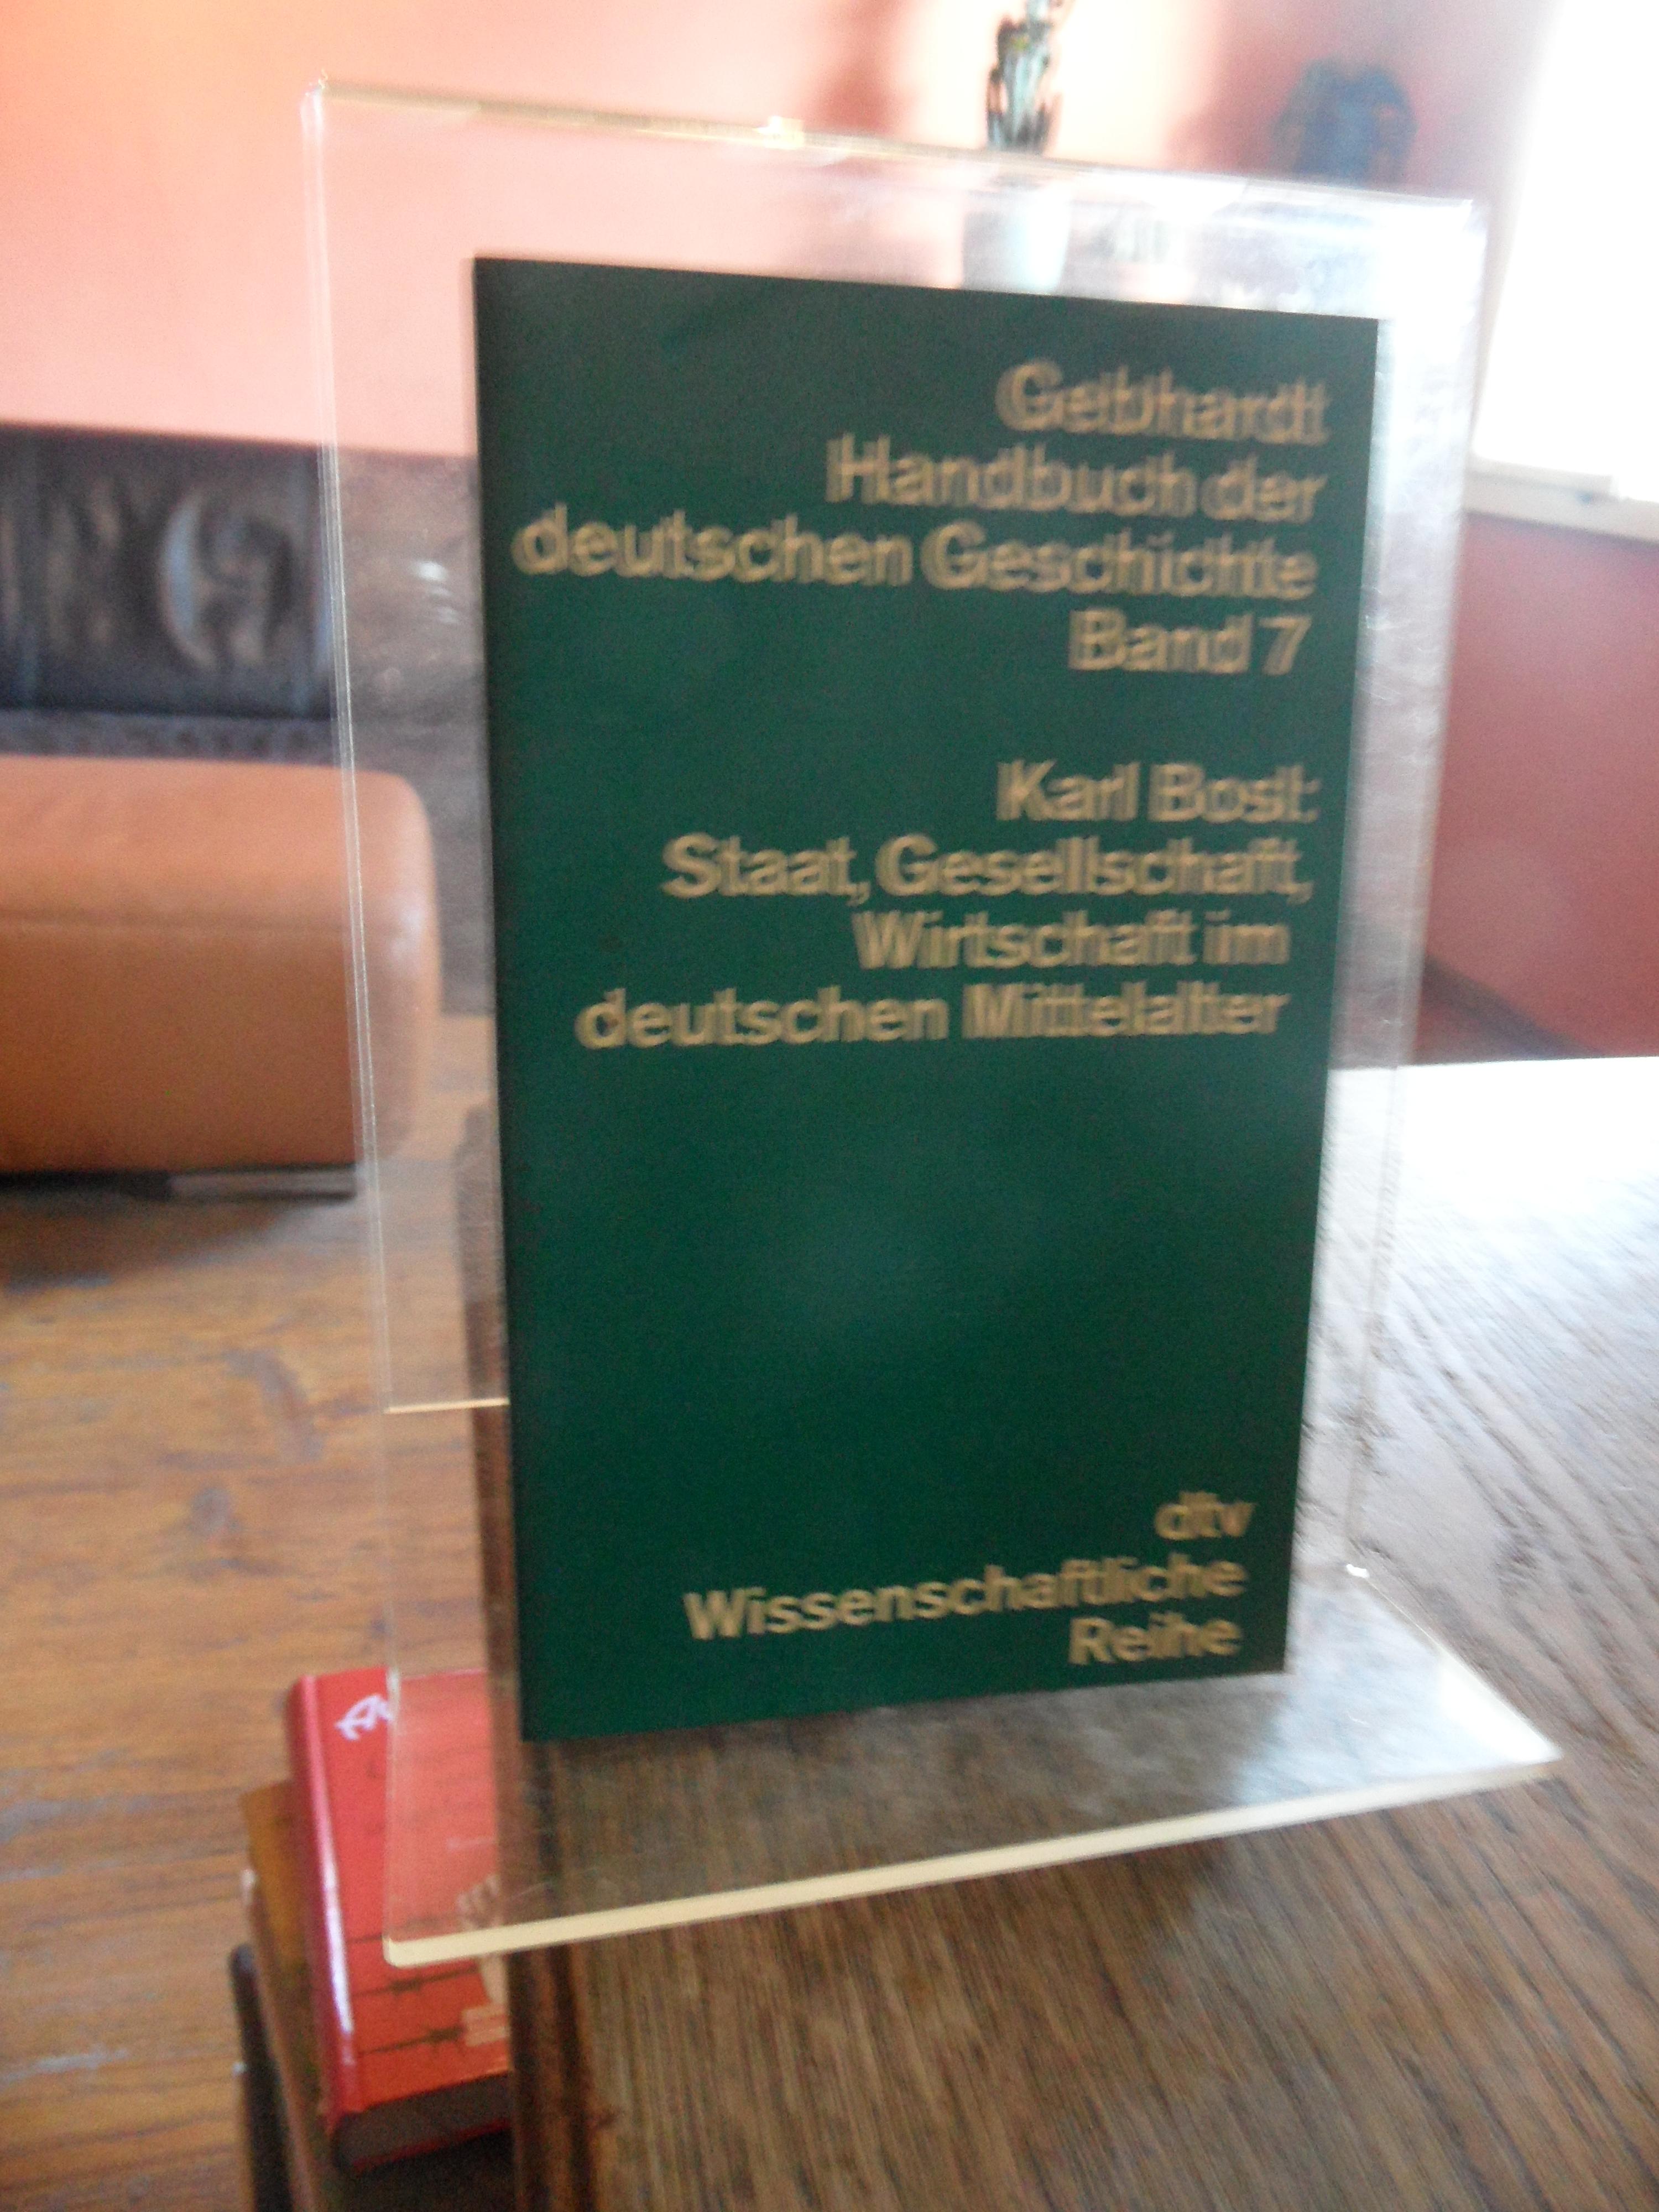 Staat, Gesellschaft, Wirtschaft im deutschen Mittelalter. [Gebhardt Handbuch der deutschen Geschichte, Band 7.]. Neunte, neu bearbeitete Auflage. - Bosl, Karl